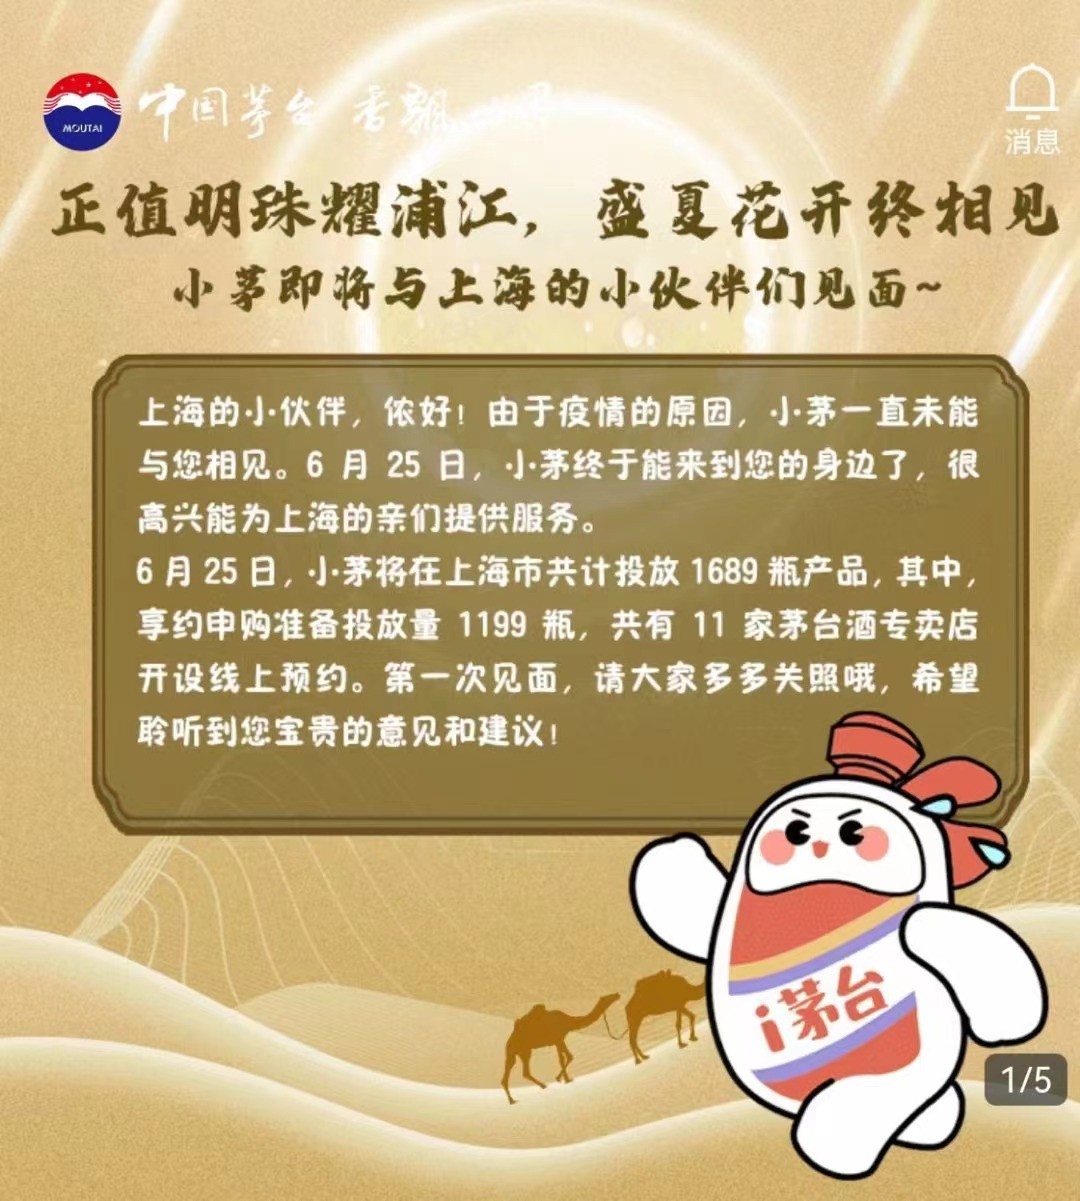 i茅台解锁上海市场，热度持续升温，背后原因究竟为何？